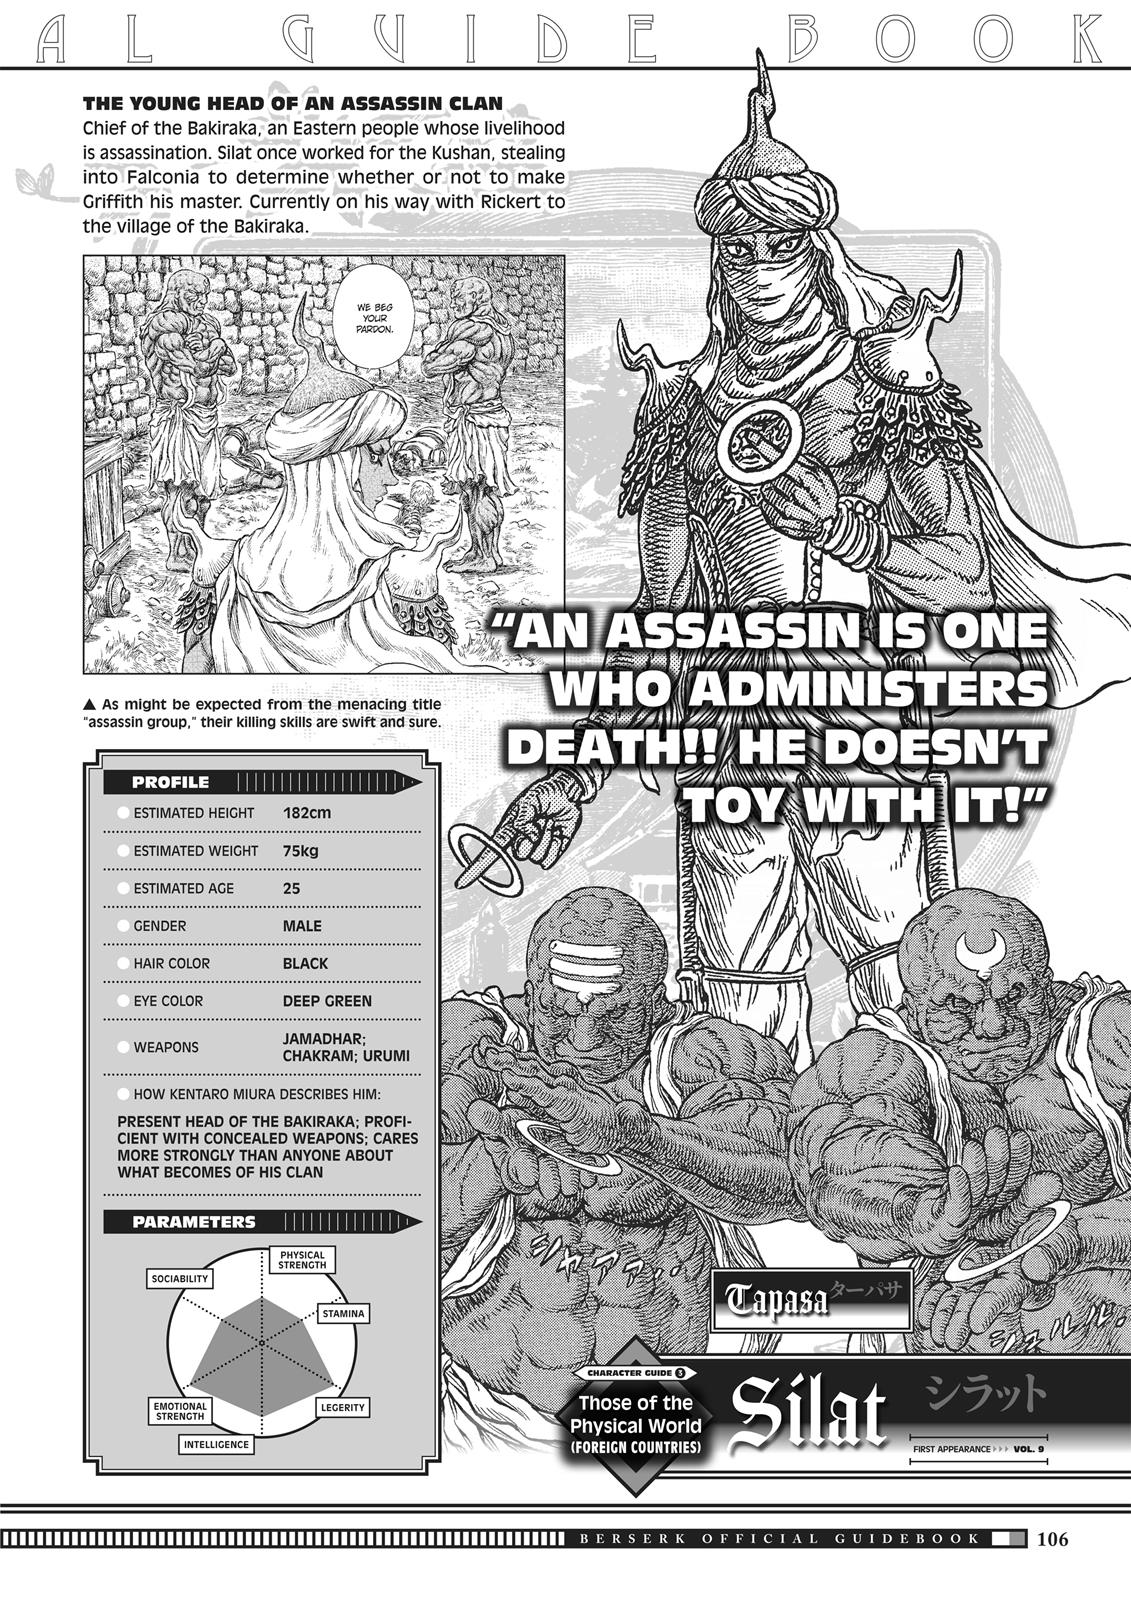 Berserk Manga Chapter 350.5 image 104